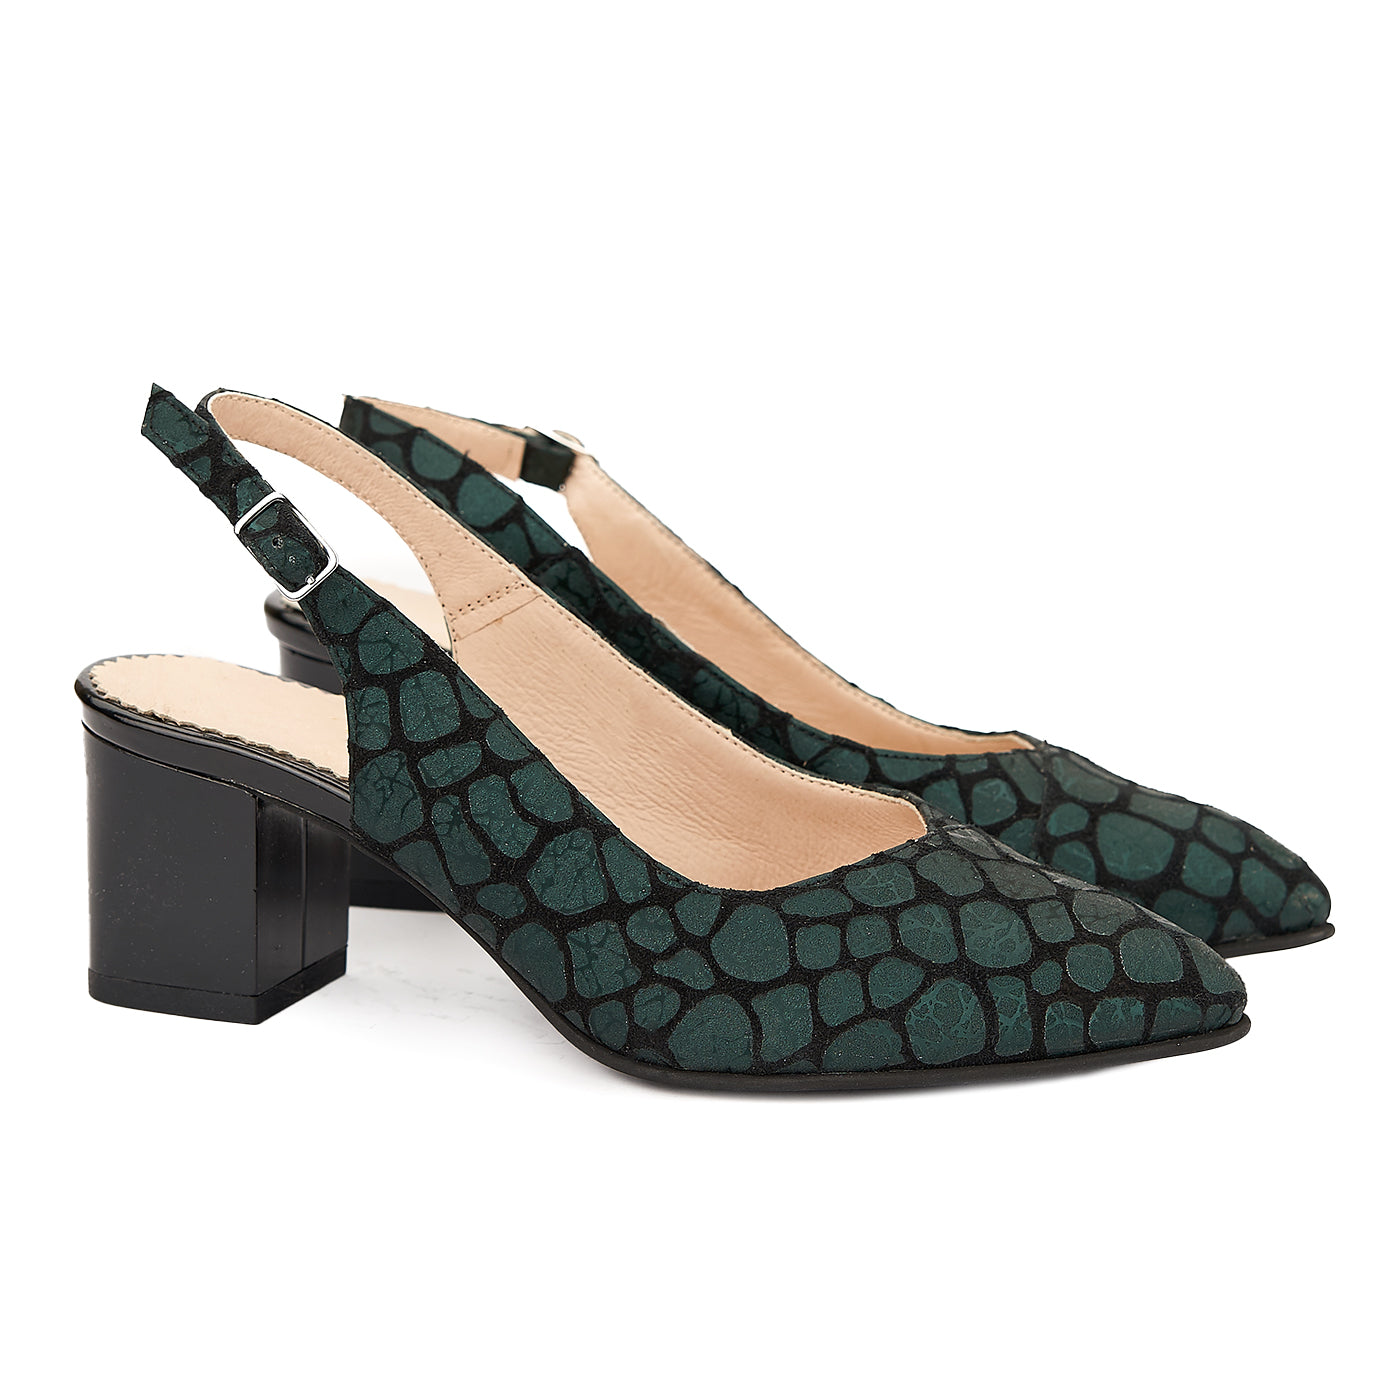 Sandale elegante din piele naturala neagra model verde 5062